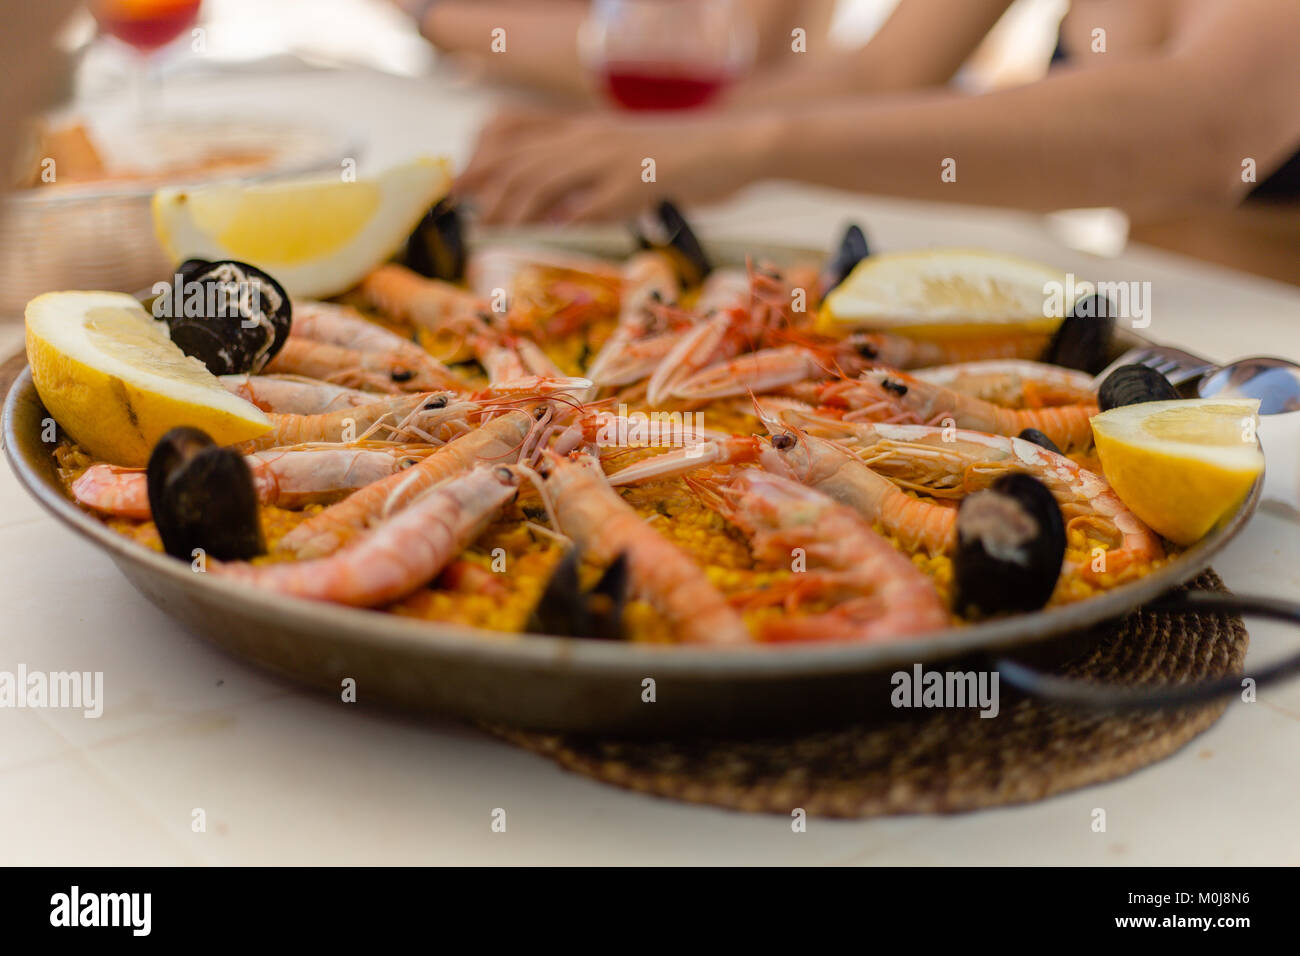 La paella: un tradizionale spagnolo/mediterraneo piatto di frutti di mare, servito nel tradizionale pan. Un pasto eccellente per condividere con amici e familiari dal mare. Foto Stock